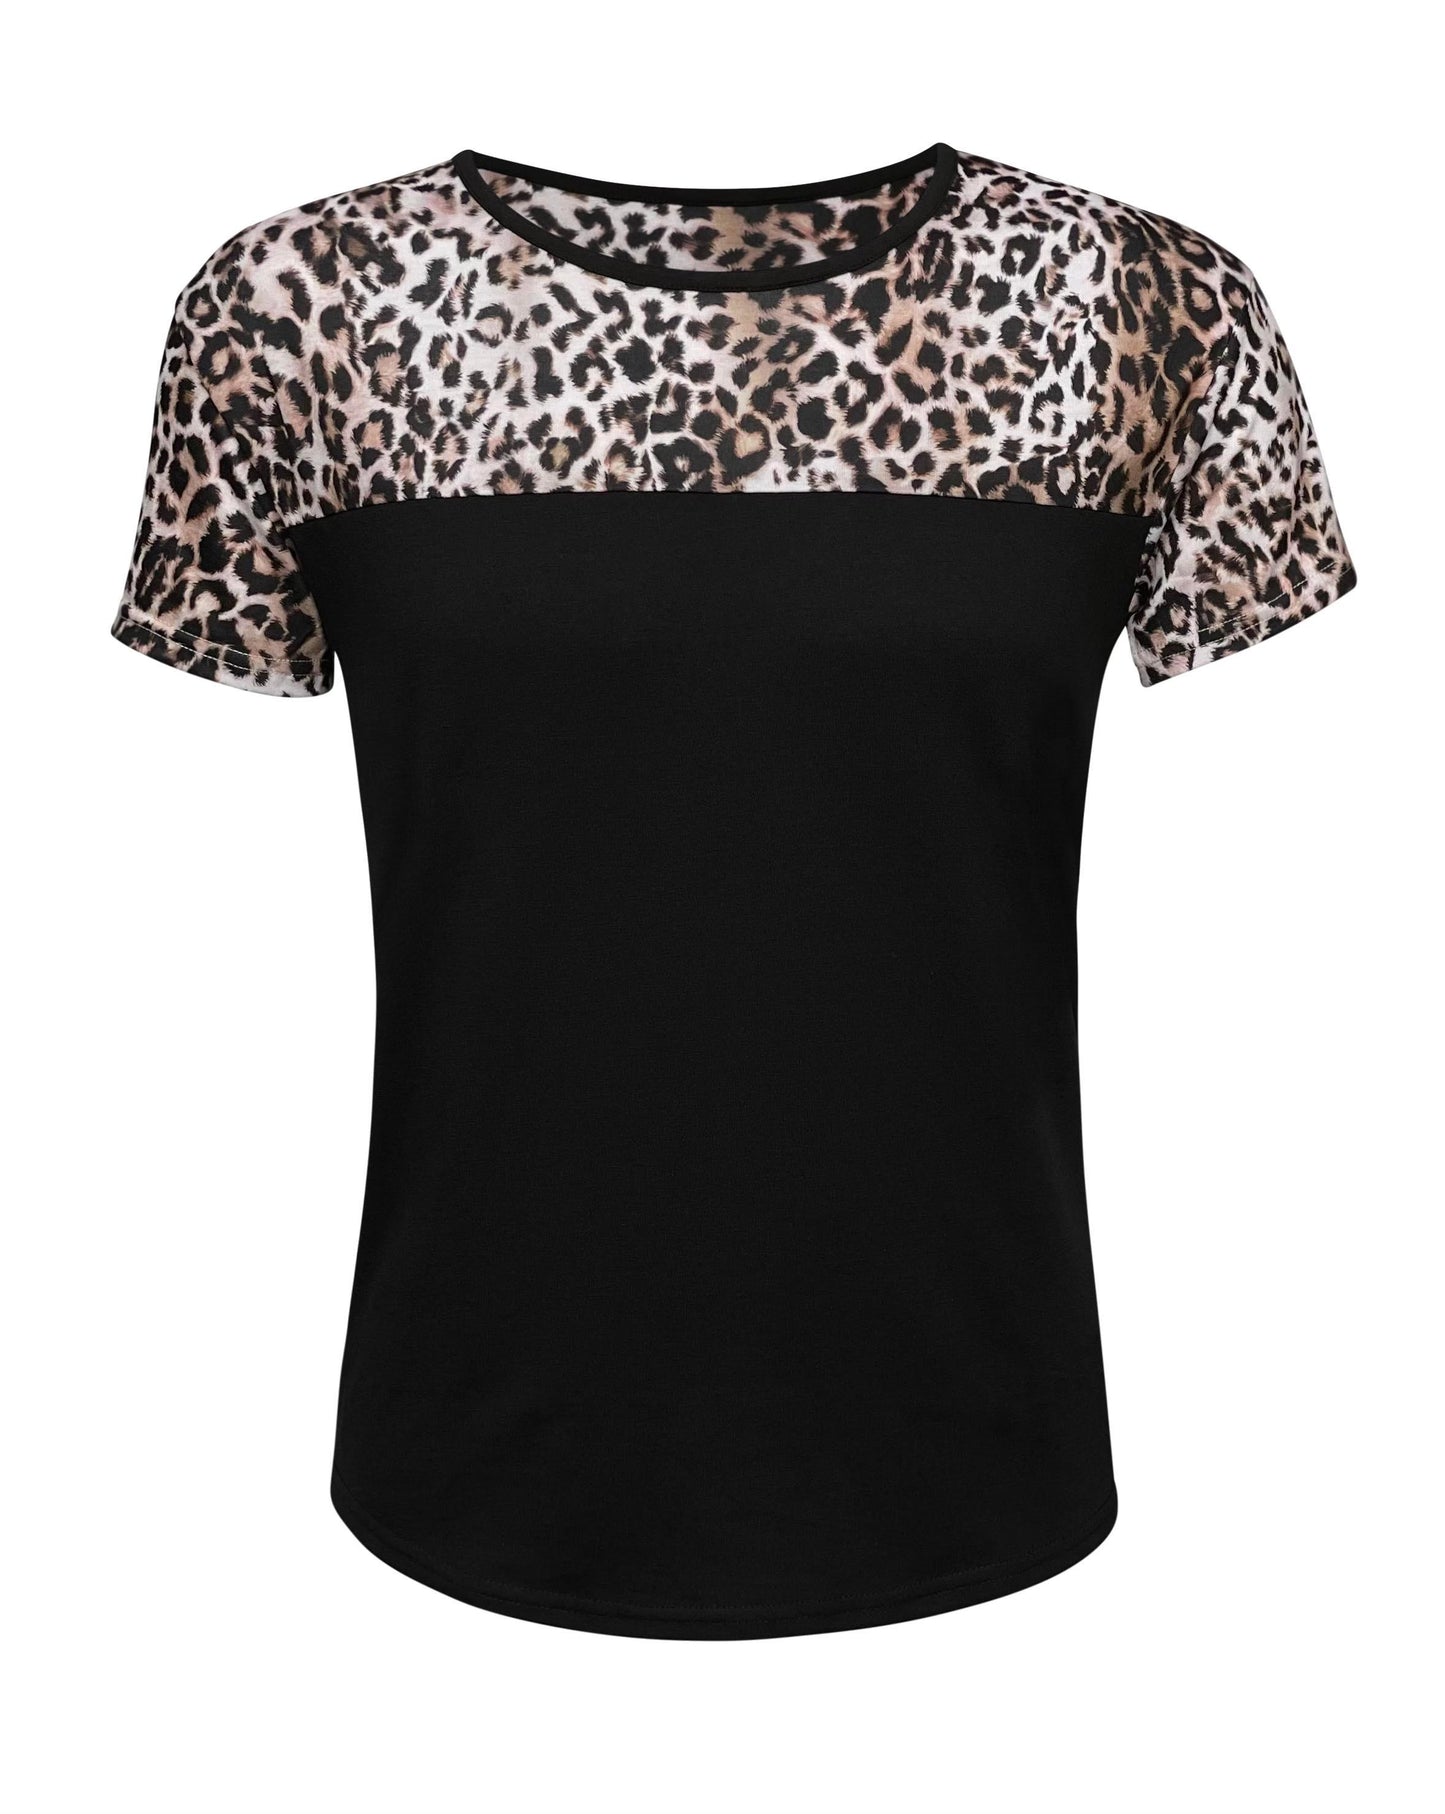 Cheetah High Polyester Raglan Type Top